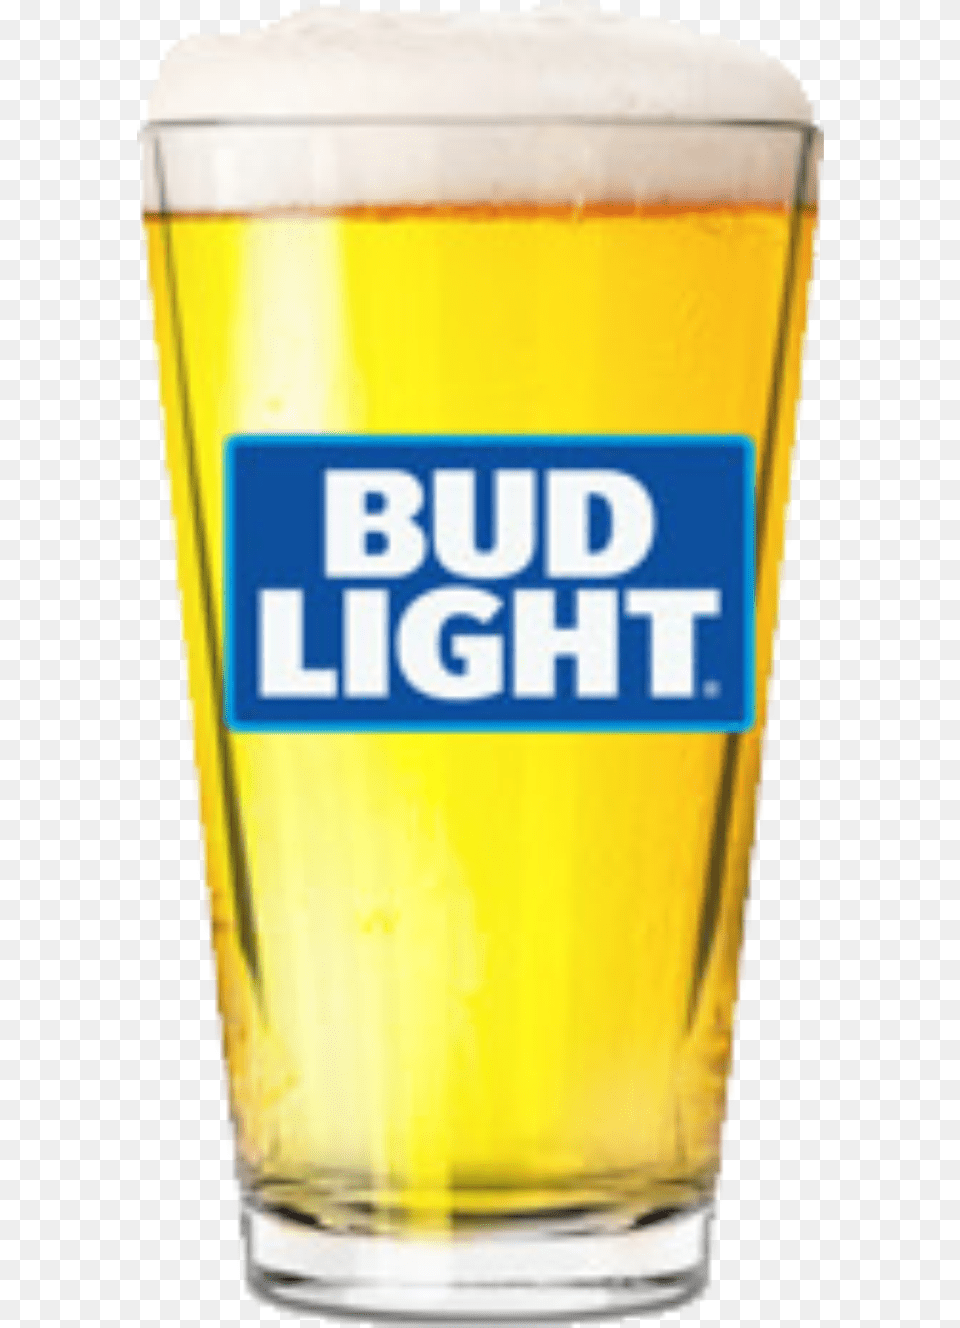 Bud Light 16 Oz Pint Glass Bud Light Glass Transparent, Alcohol, Beer, Beer Glass, Beverage Png